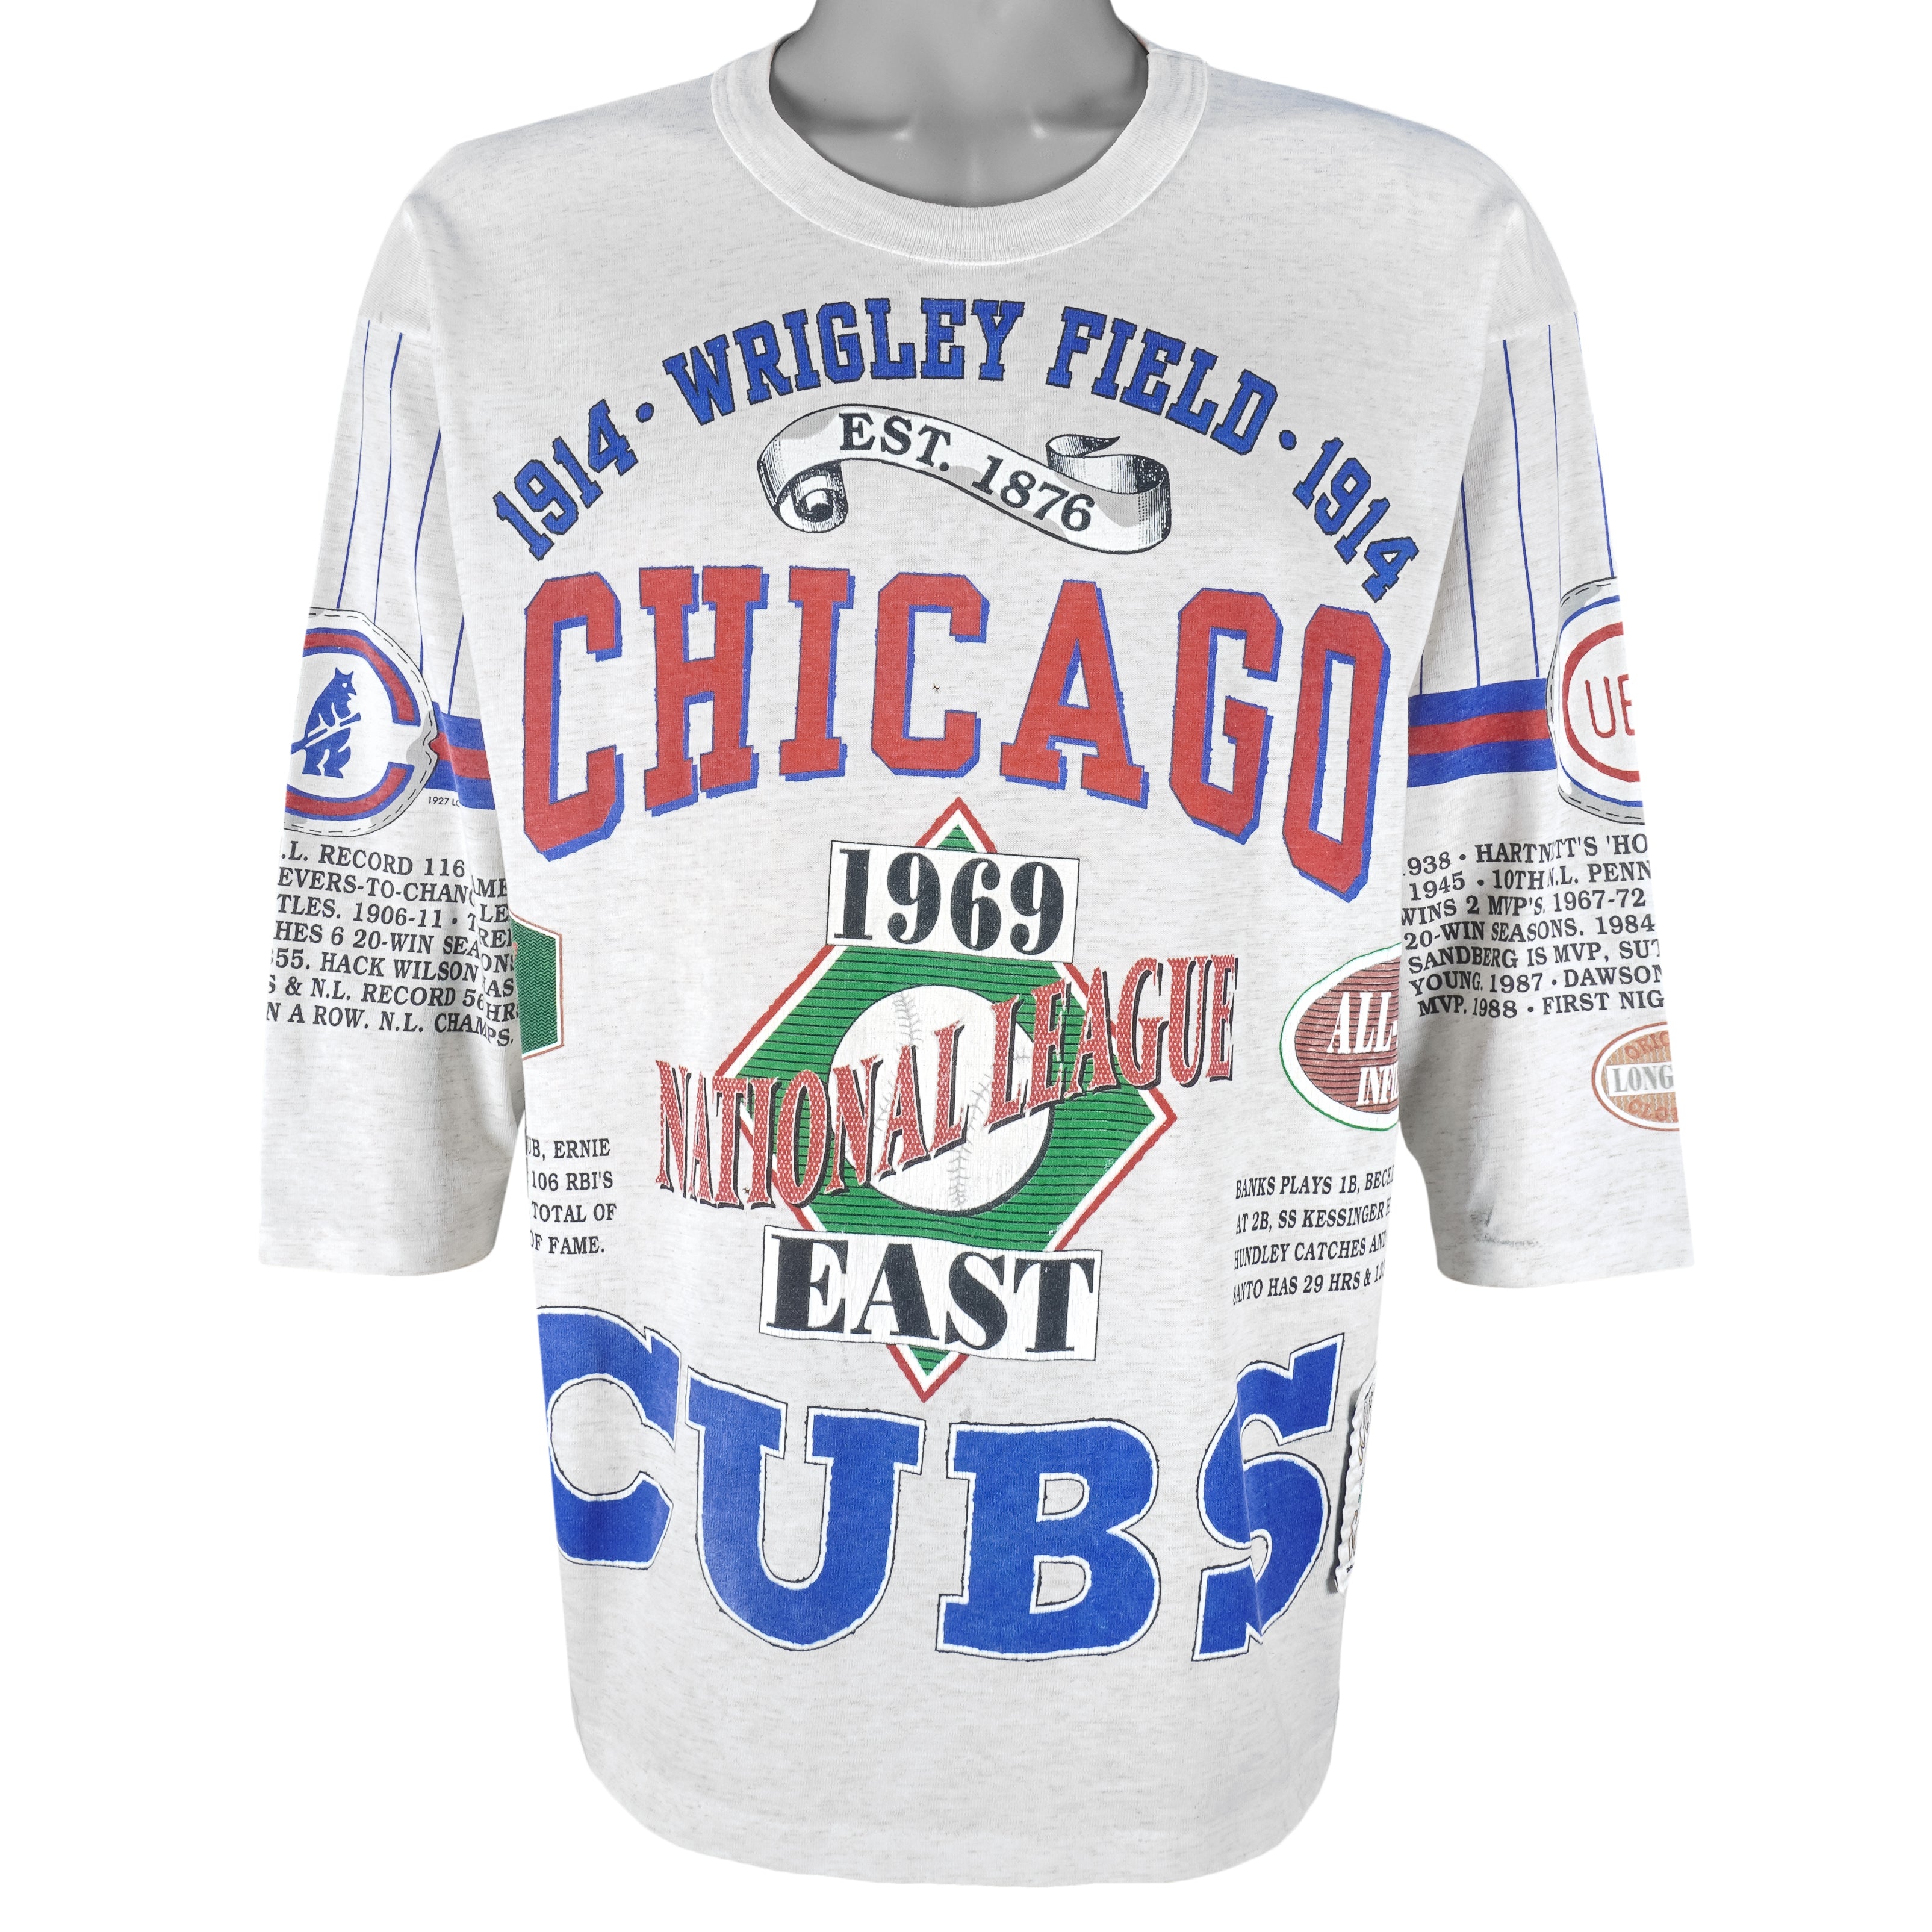 1984 cubs shirt